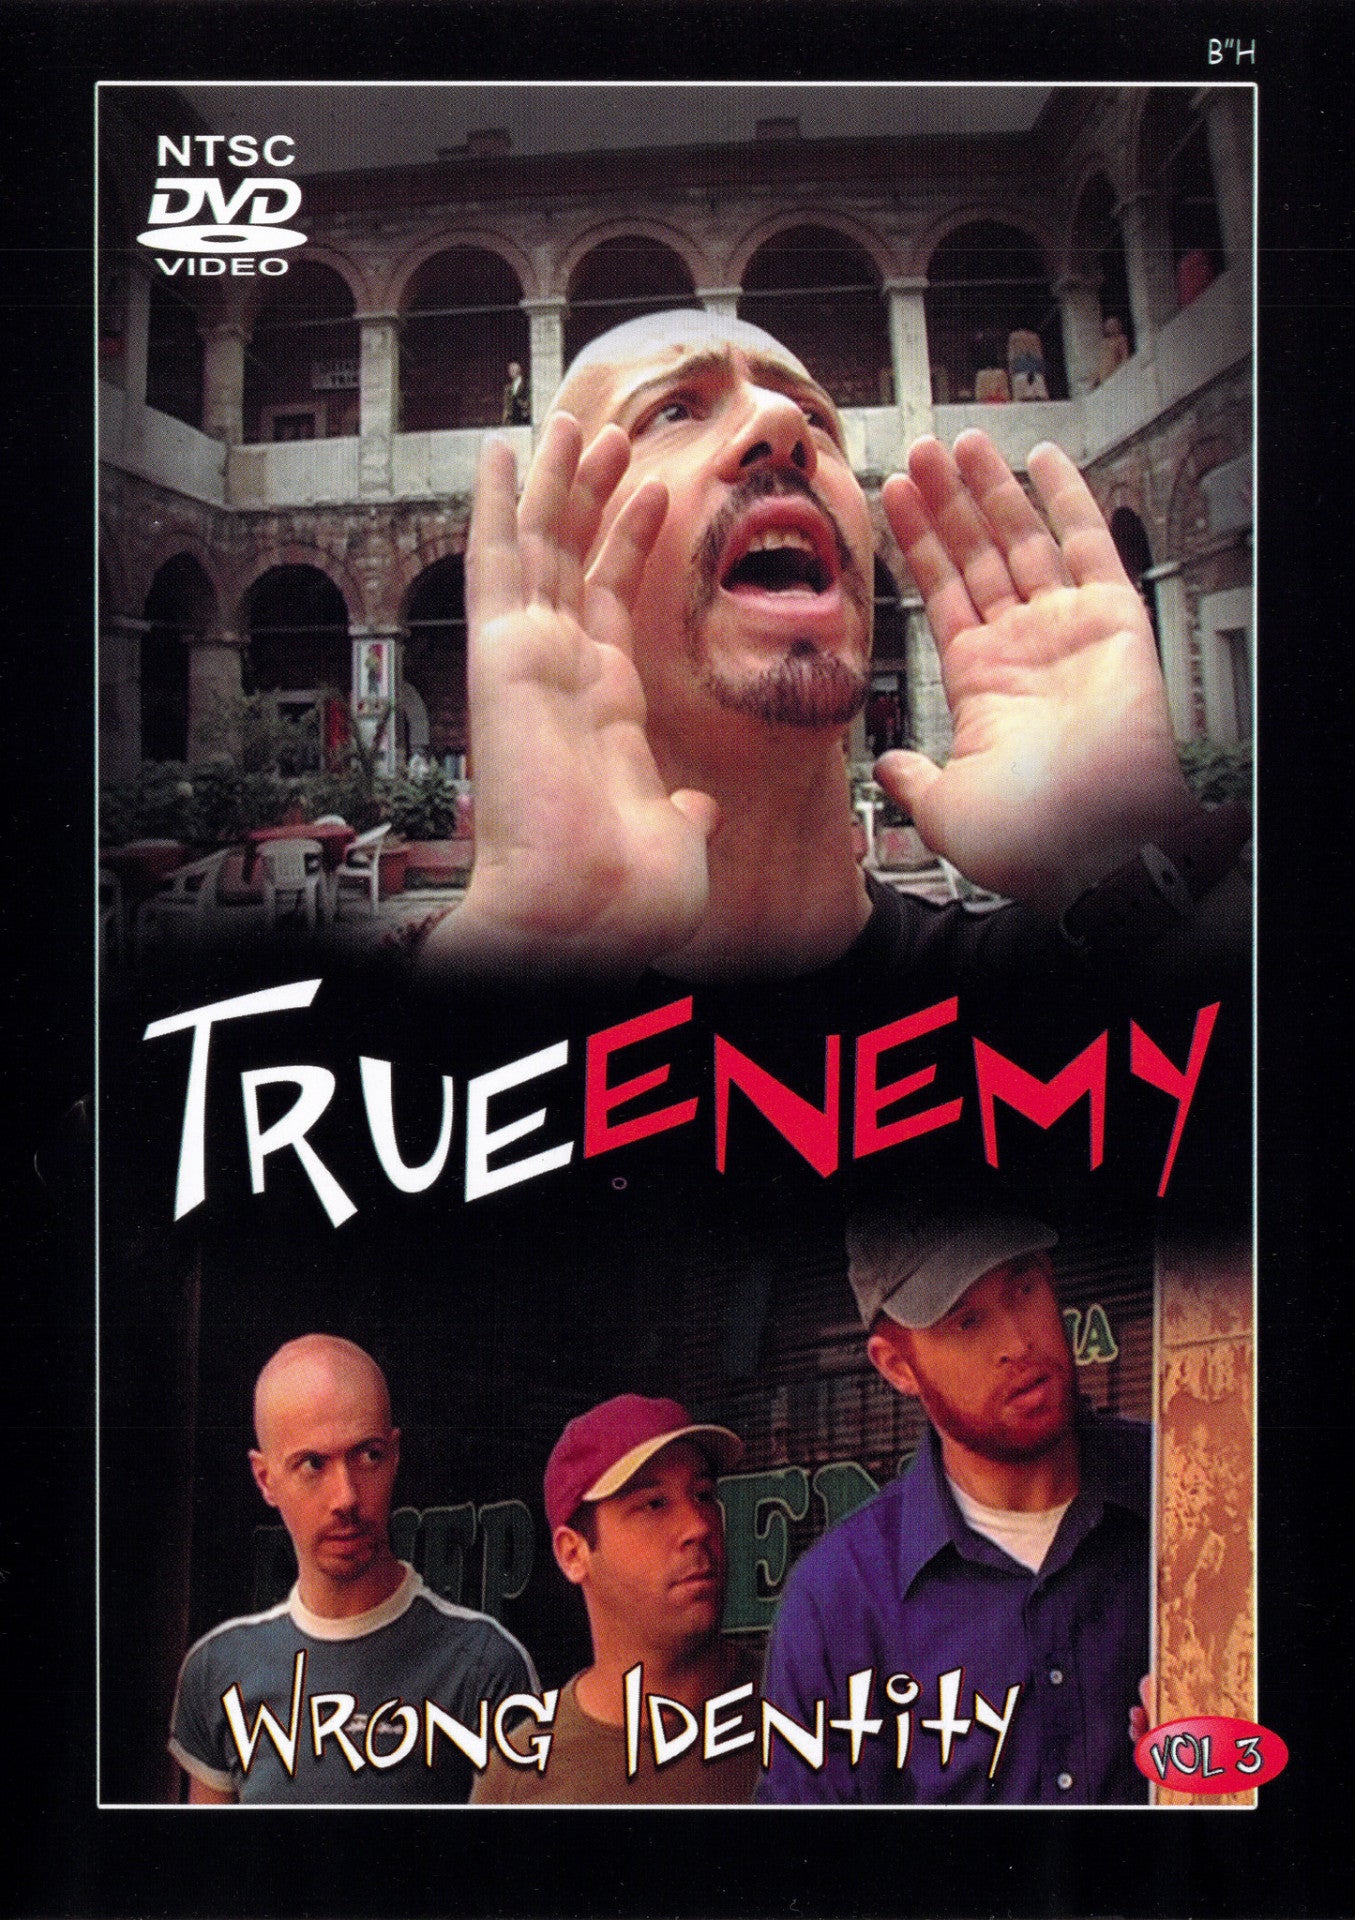 True Enemy - Vol 3 - Wrong Identity